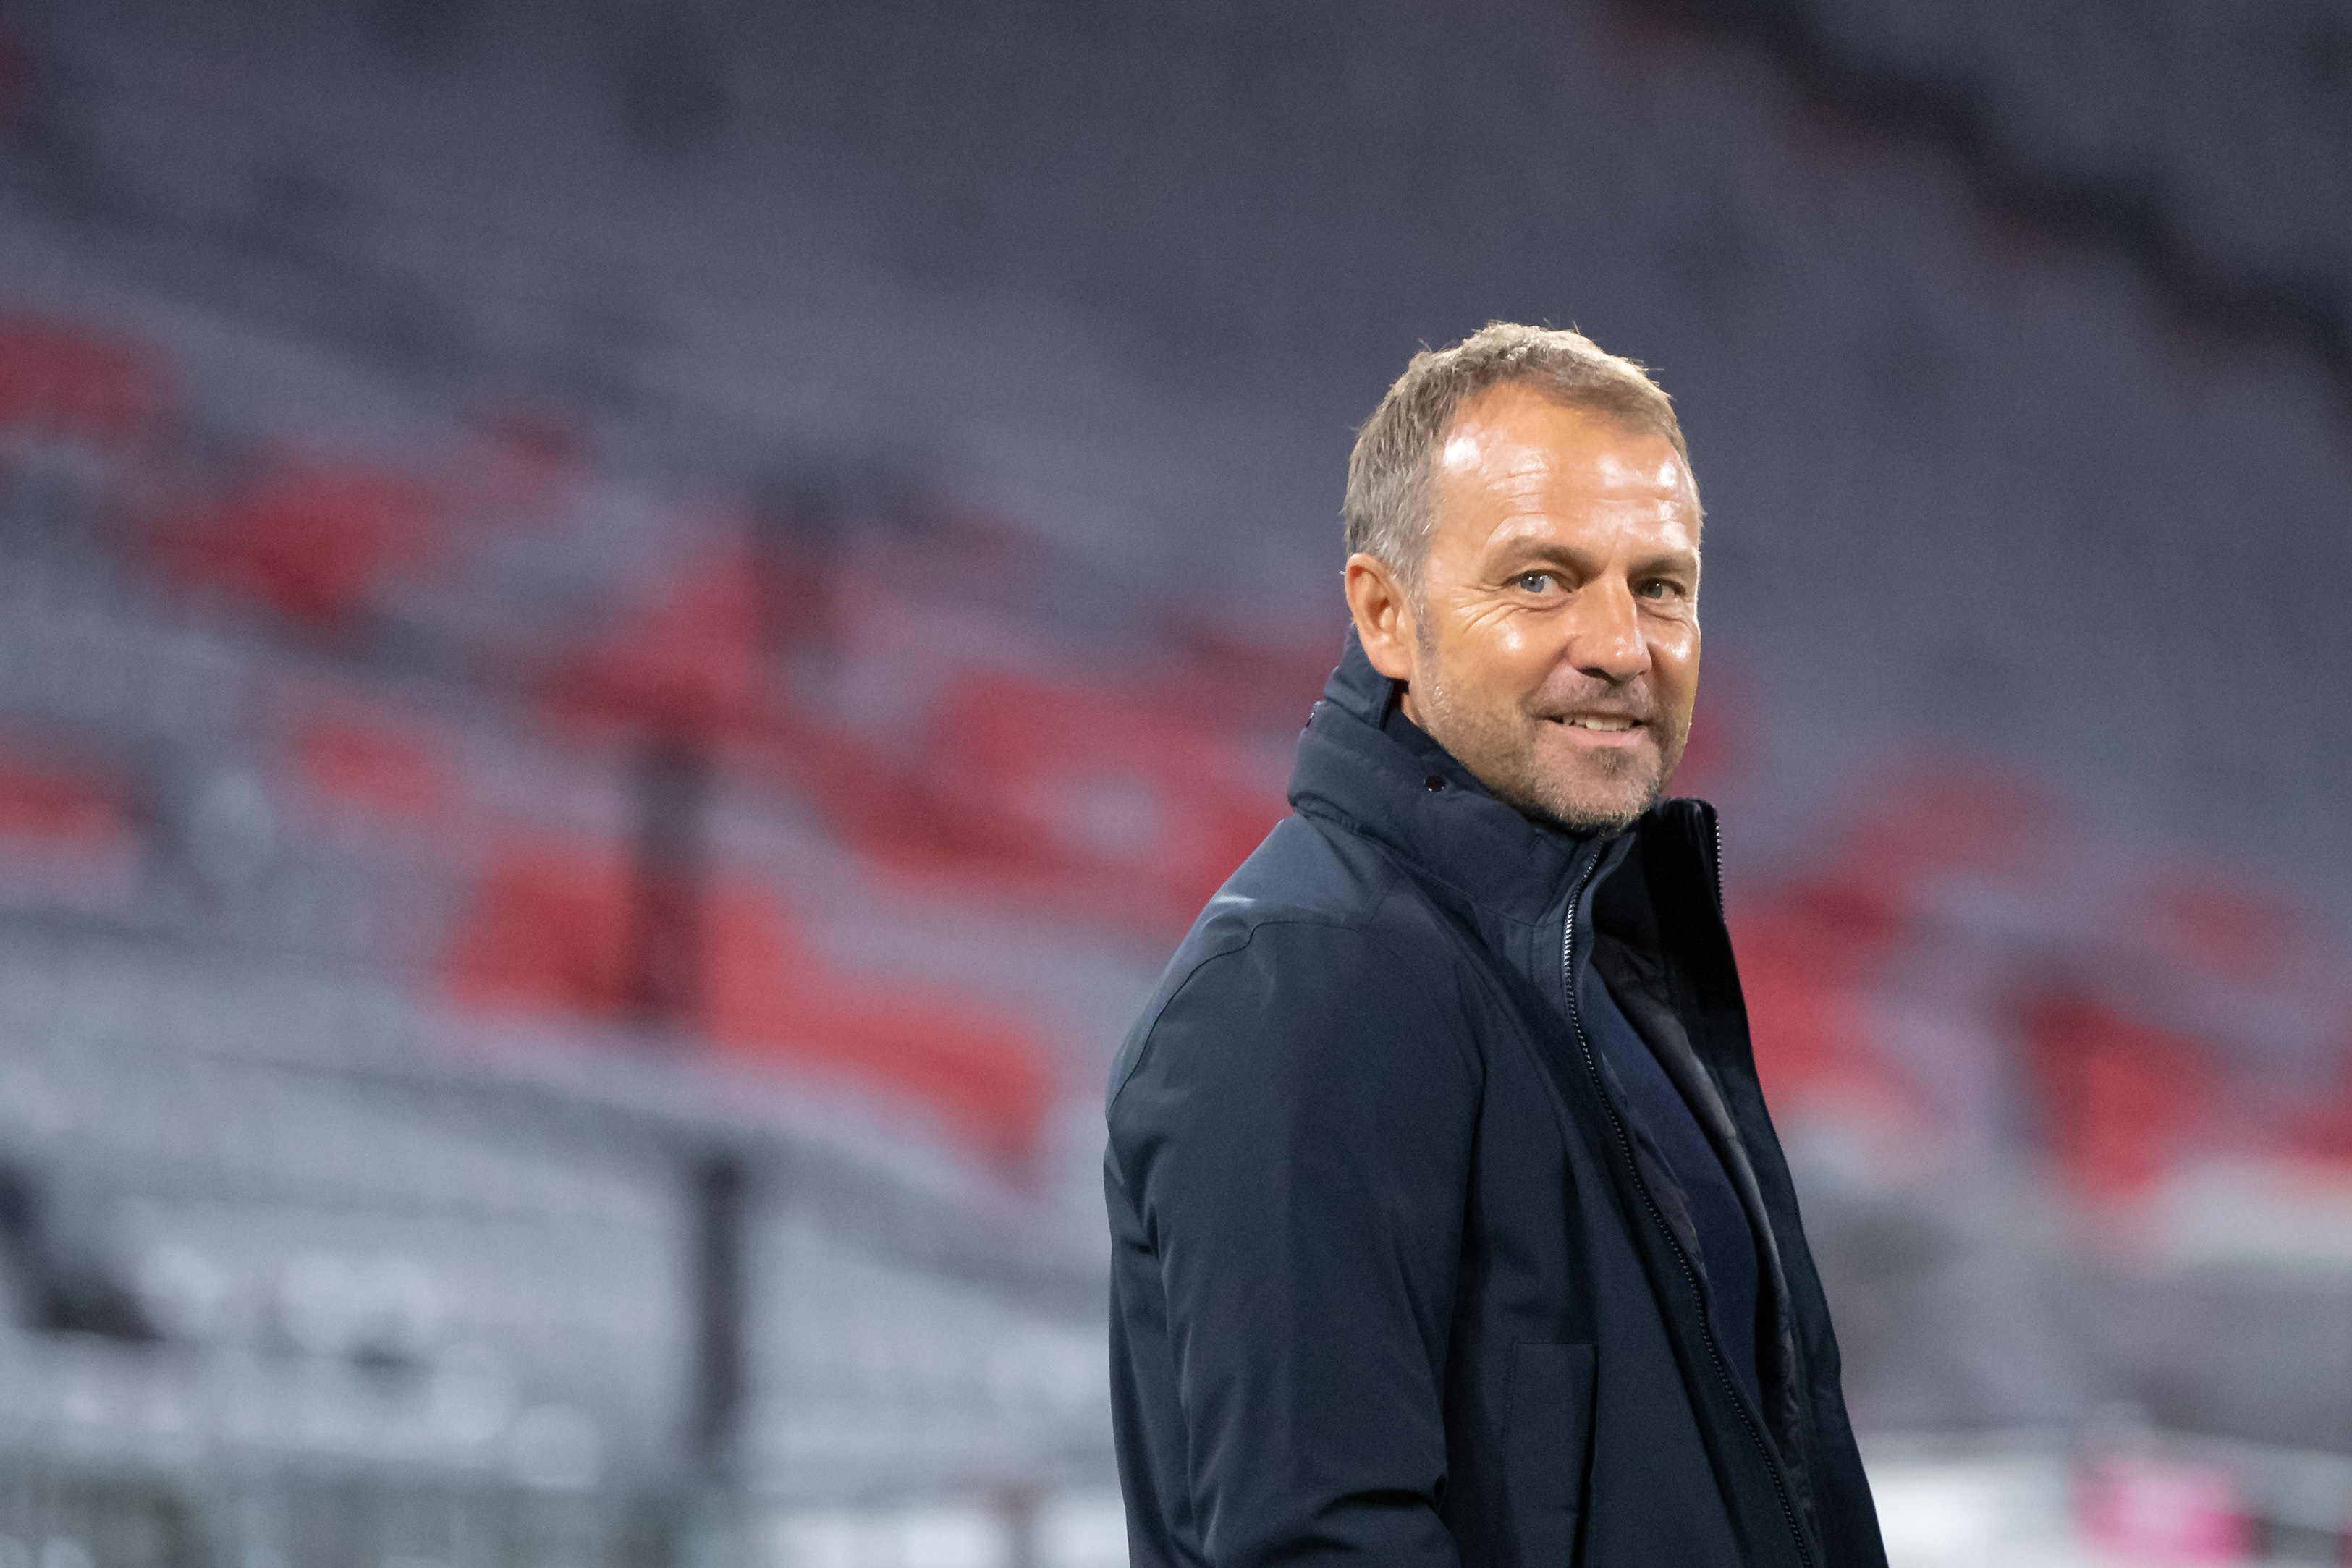 Hansi Flick az új szövetségi kapitány, az EB után veszi át a német válogatottat Löwtől